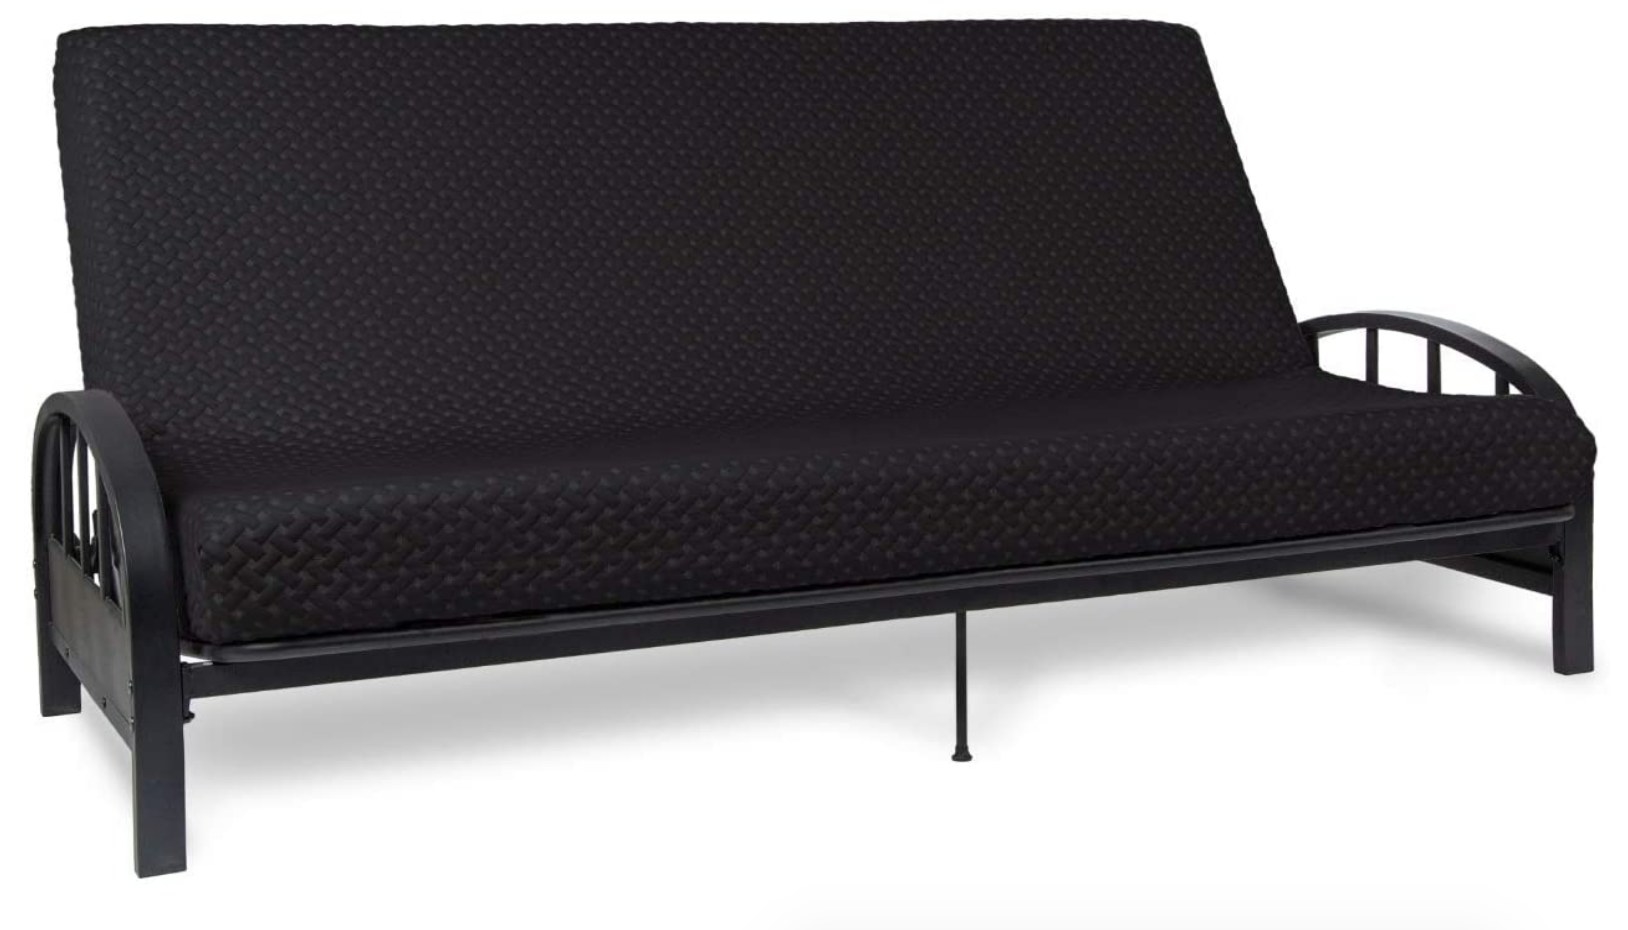 A black, memory-foam futon mattress